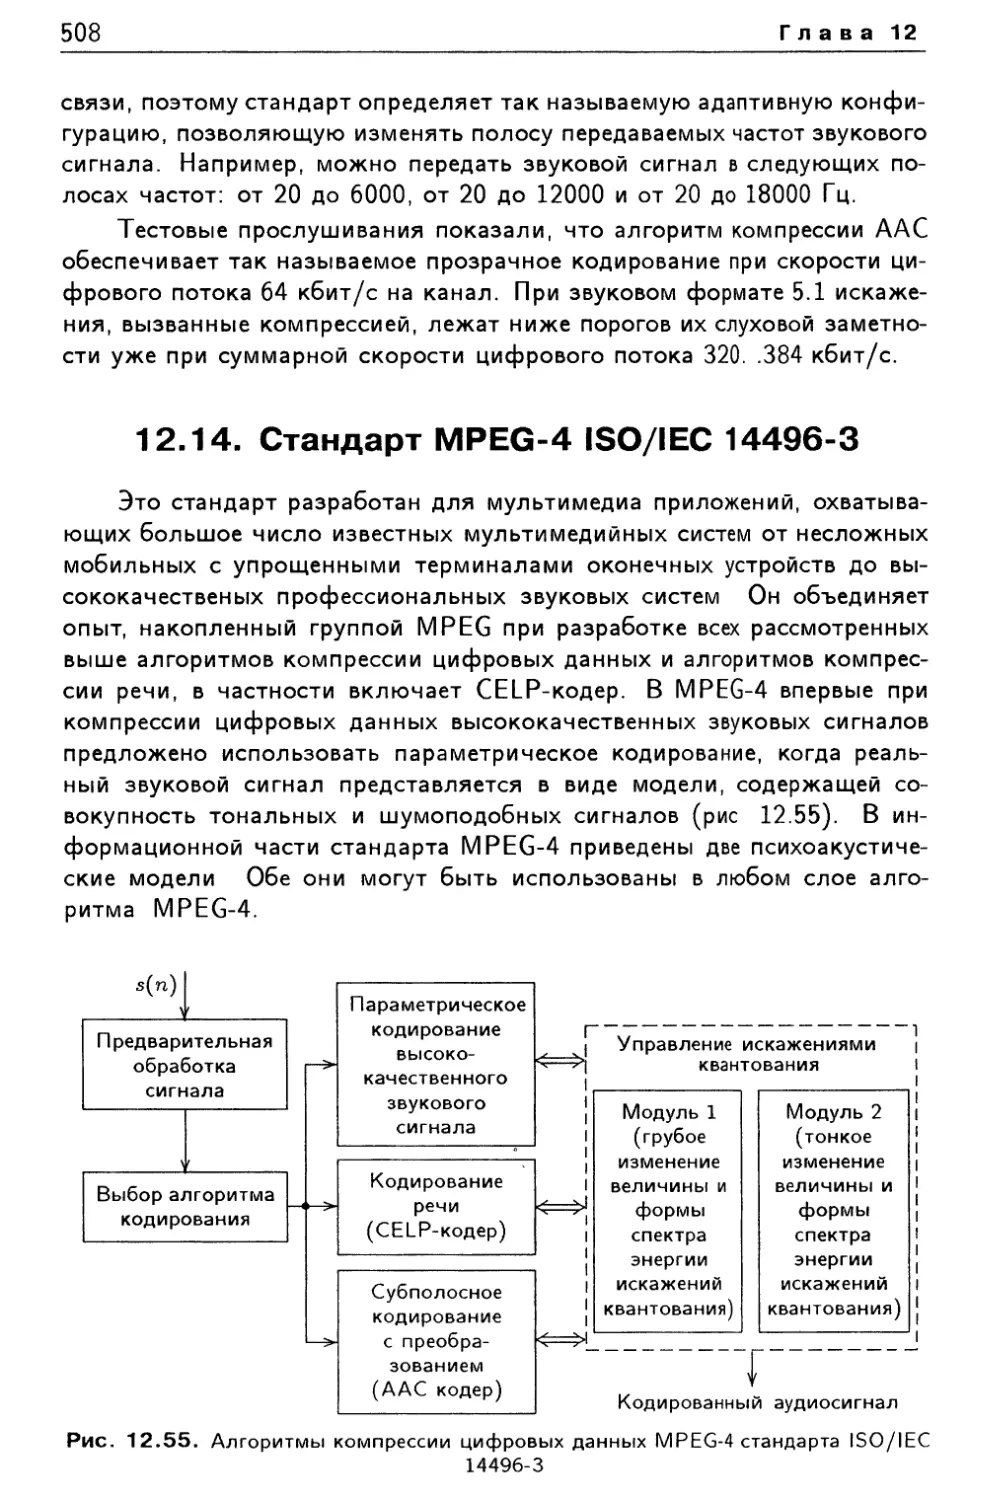 12.14. Стандарт MPEG-4 ISO/IEC 14496-3